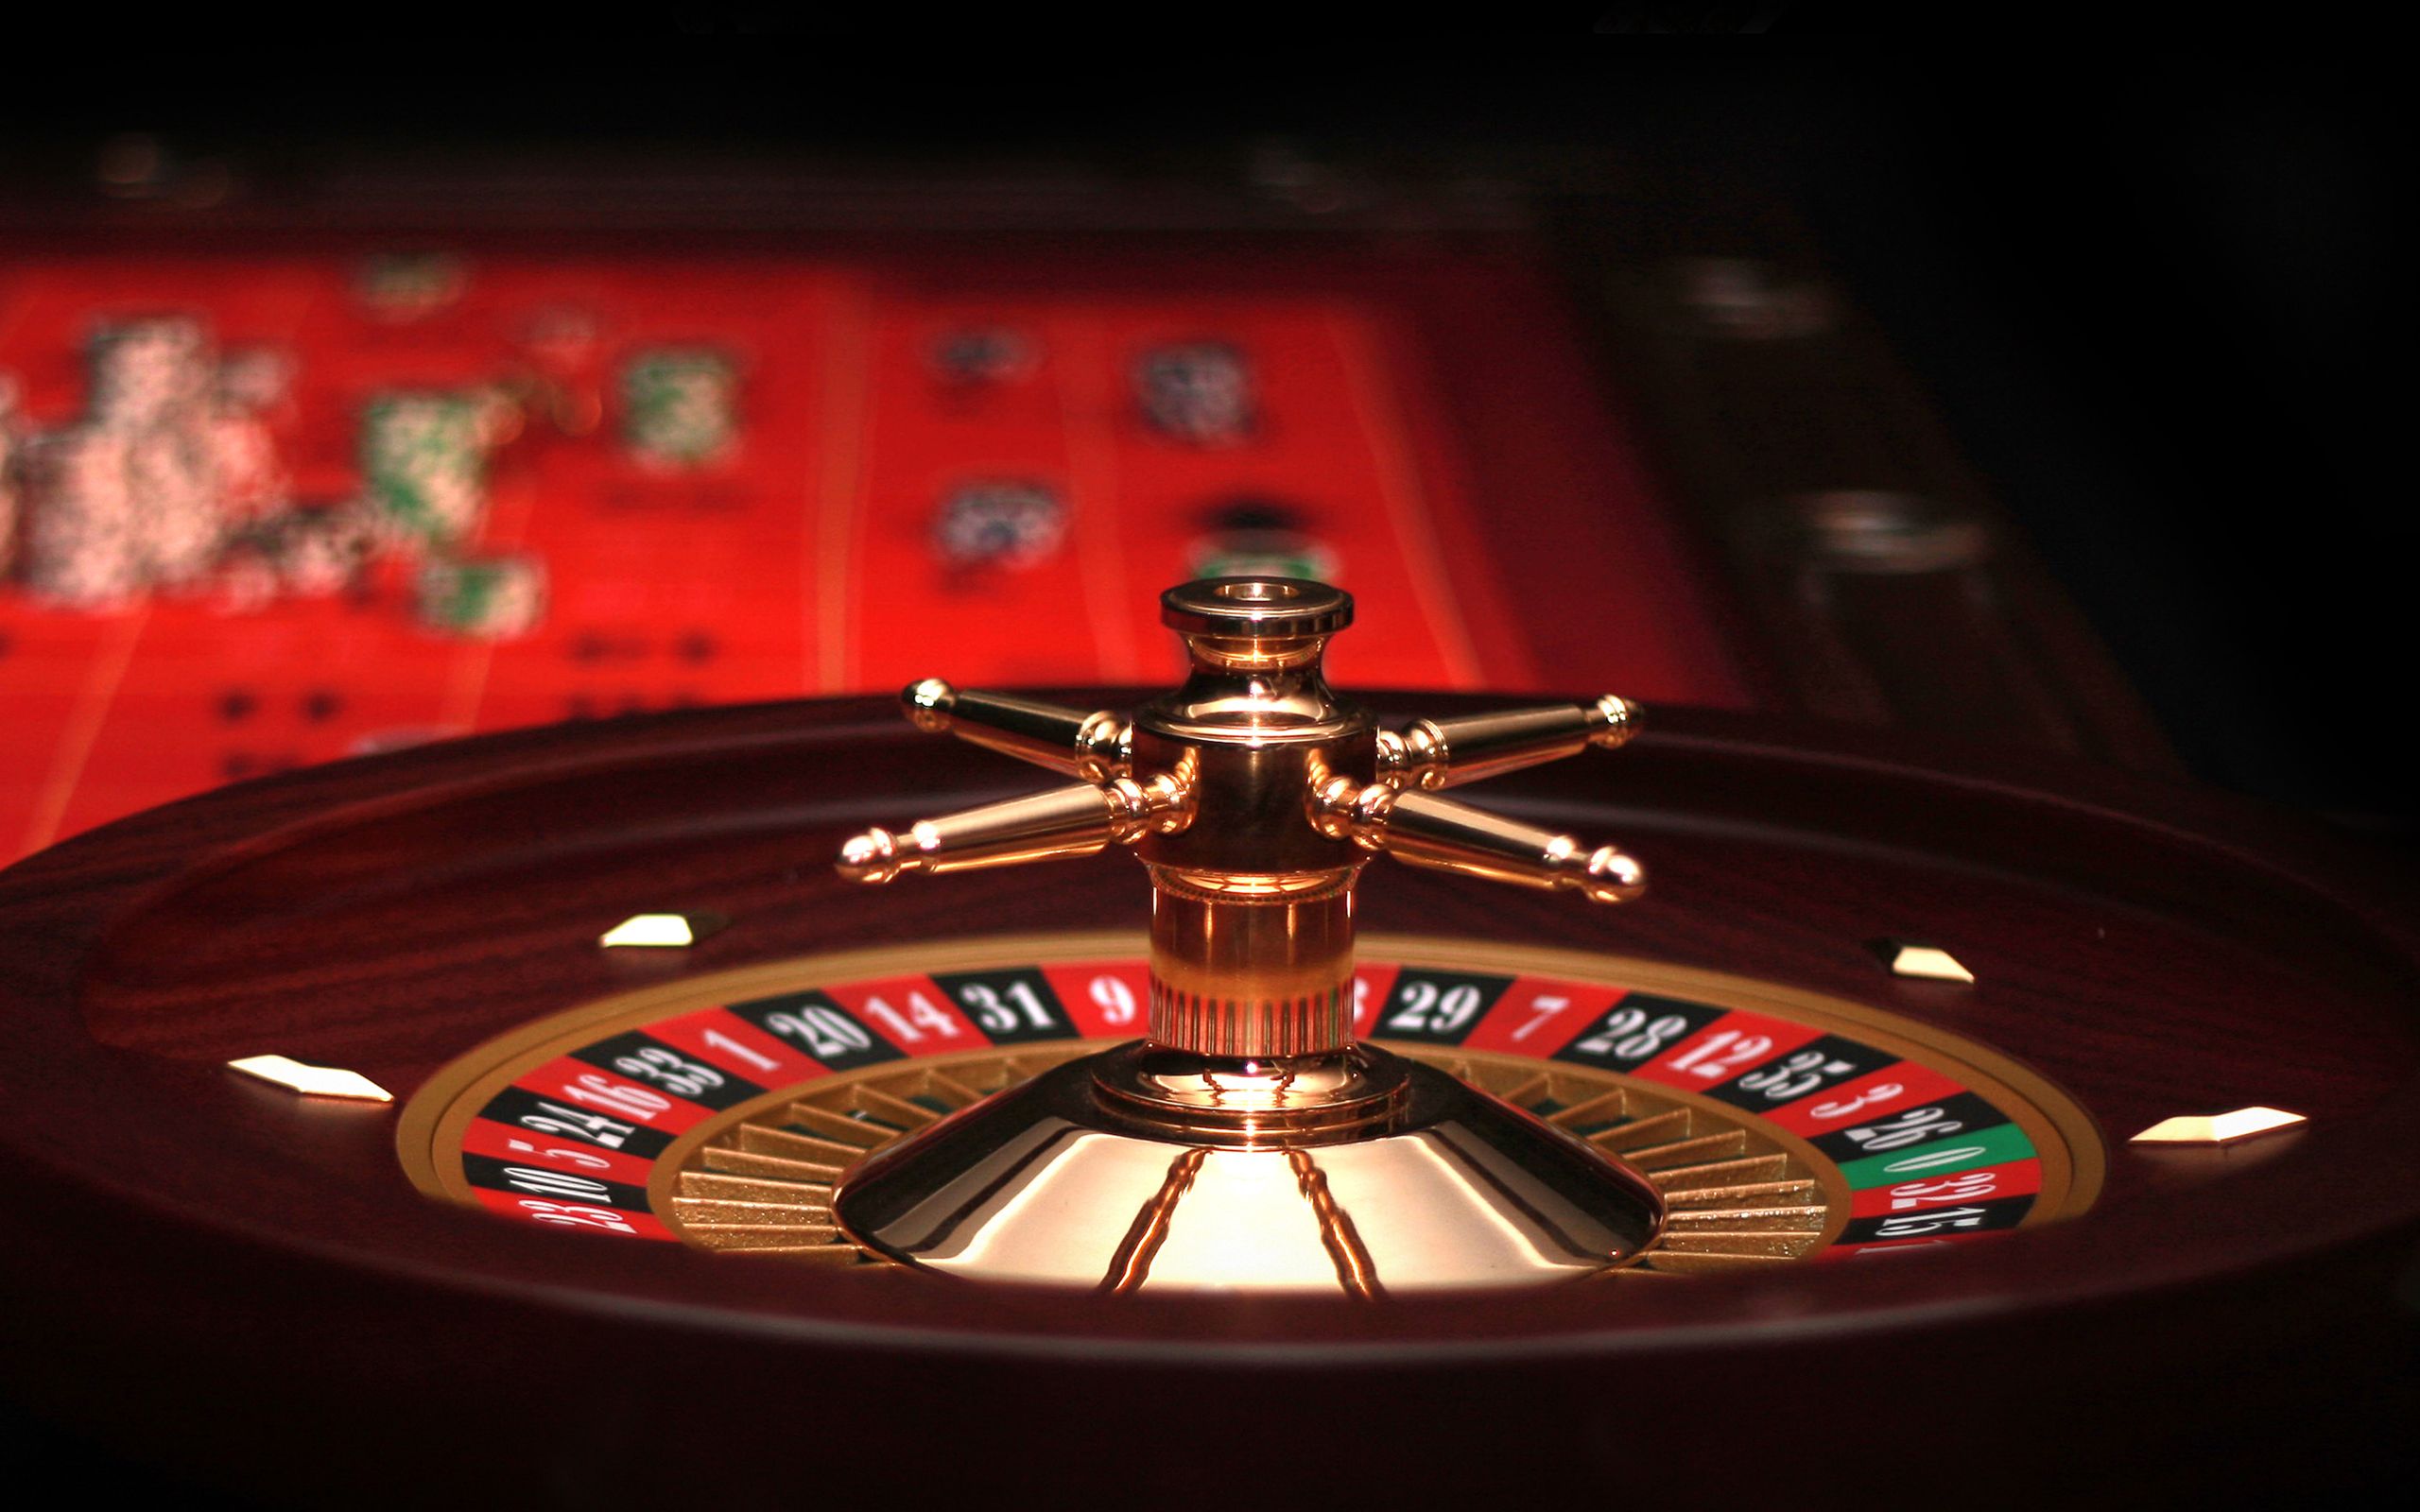 Hard rock casino симулятор игры в казино бесплатно для pc